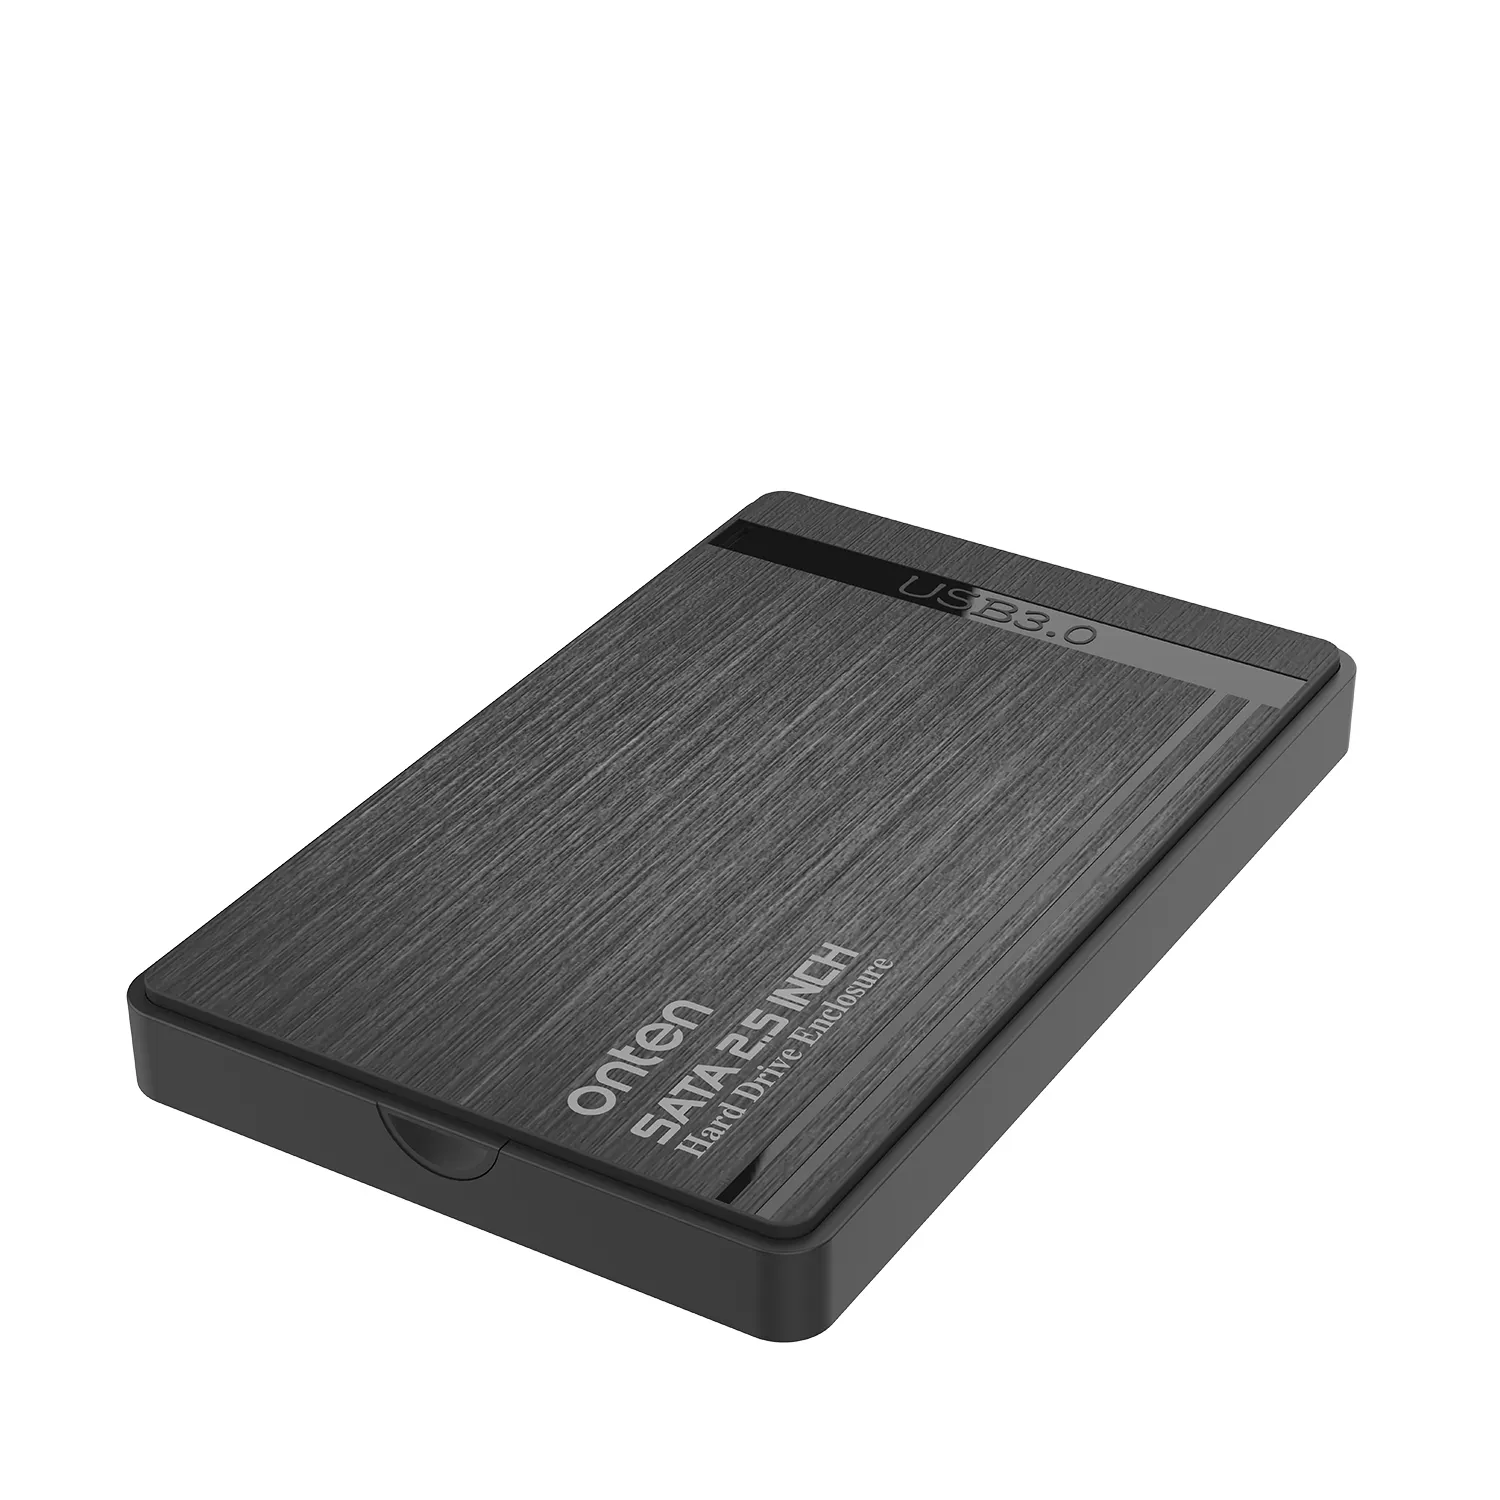 하드 드라이브 외장형 HDD 인클로저 2.5 인치 USB 3.0 SATA HD 박스 2 in 1 케이블 노트북 데스크탑 OTN-UHD1 플라스틱 케이스